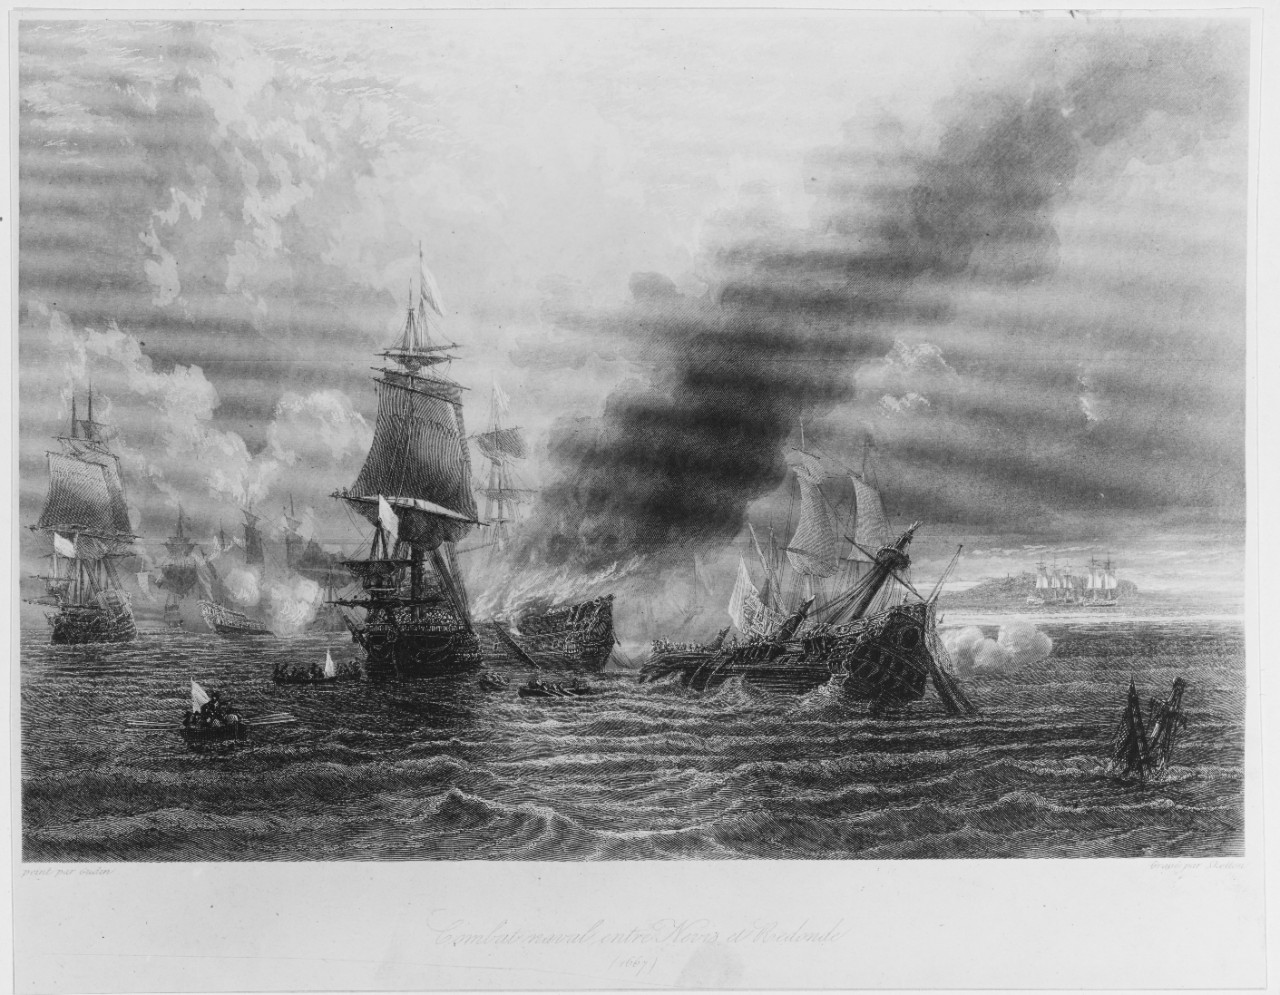 "Naval Battle between NEVIS and REDONDE, 1667"